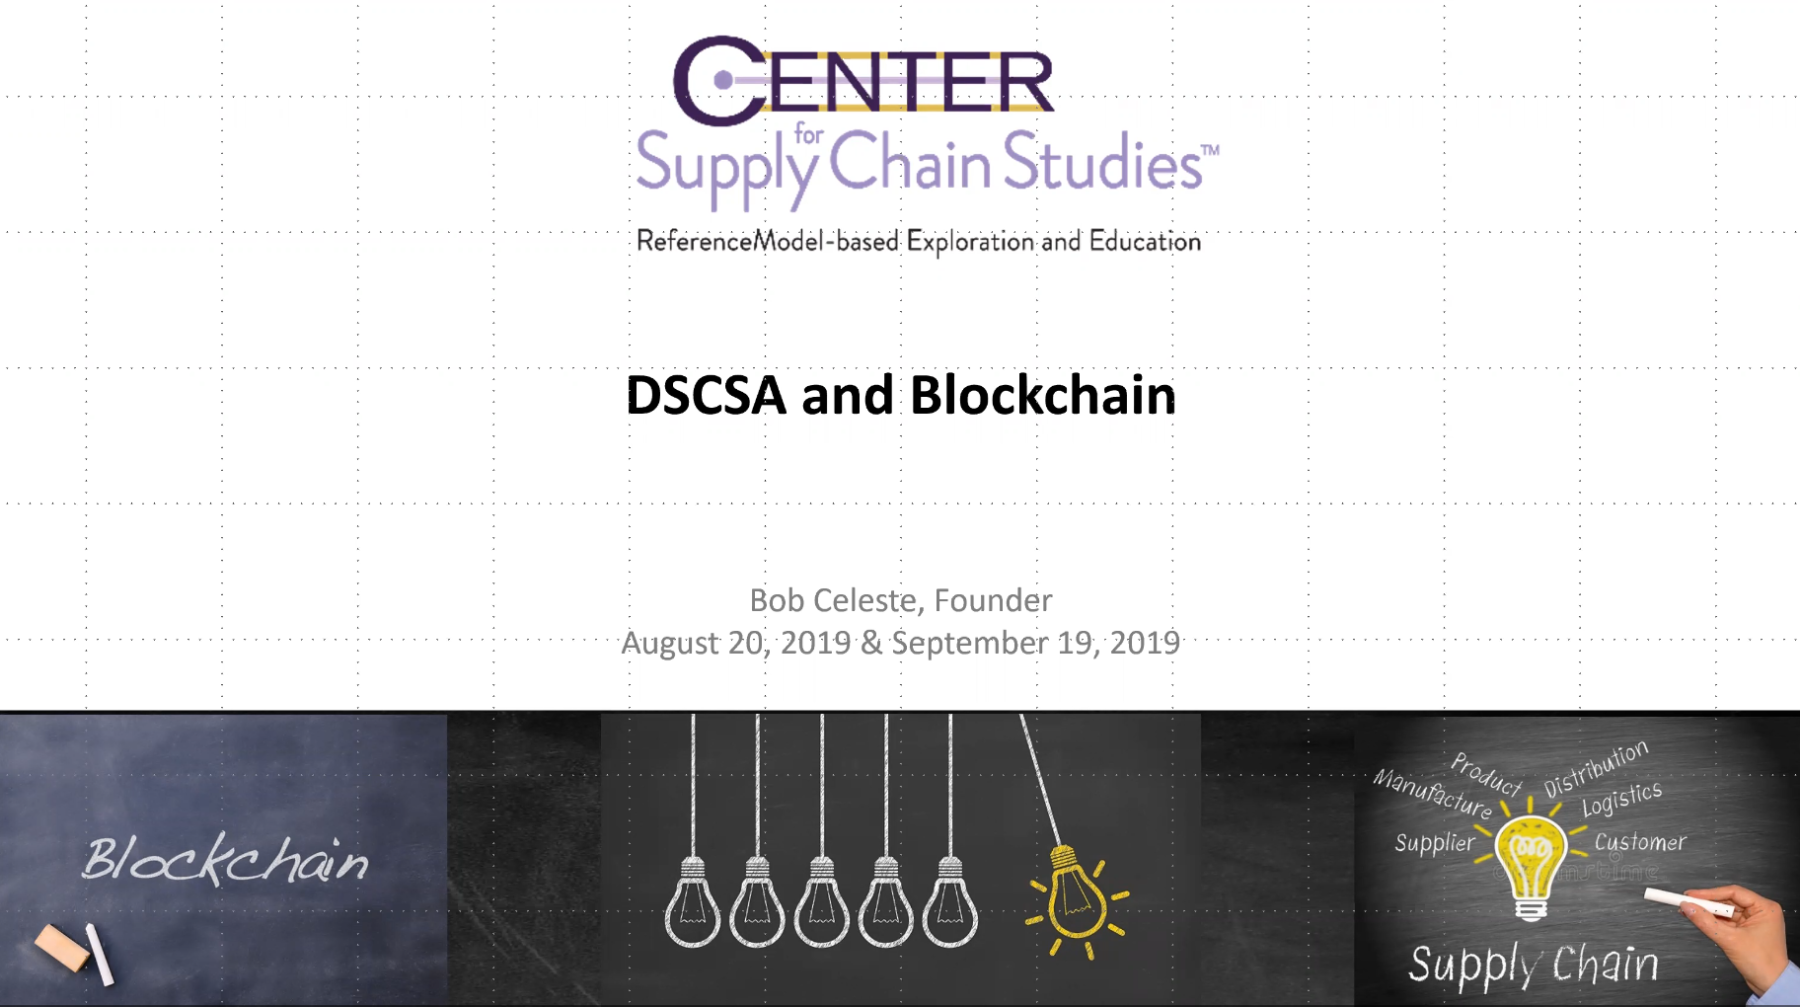 DSCSA and Blockchain